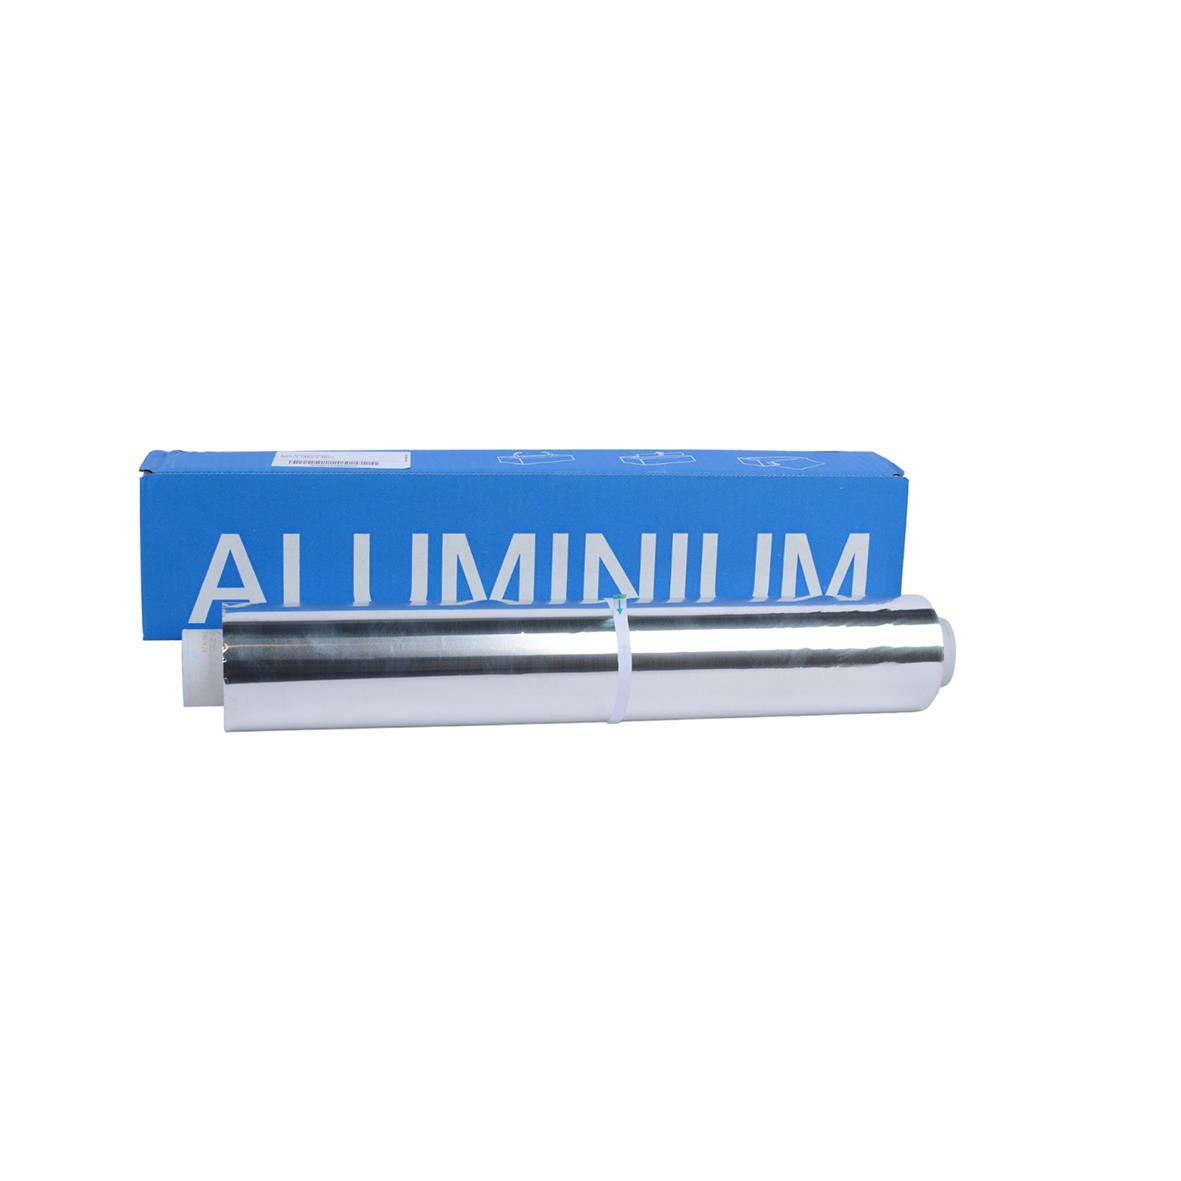 Aluminium Grillfolie i box 18my 45cm x 150m